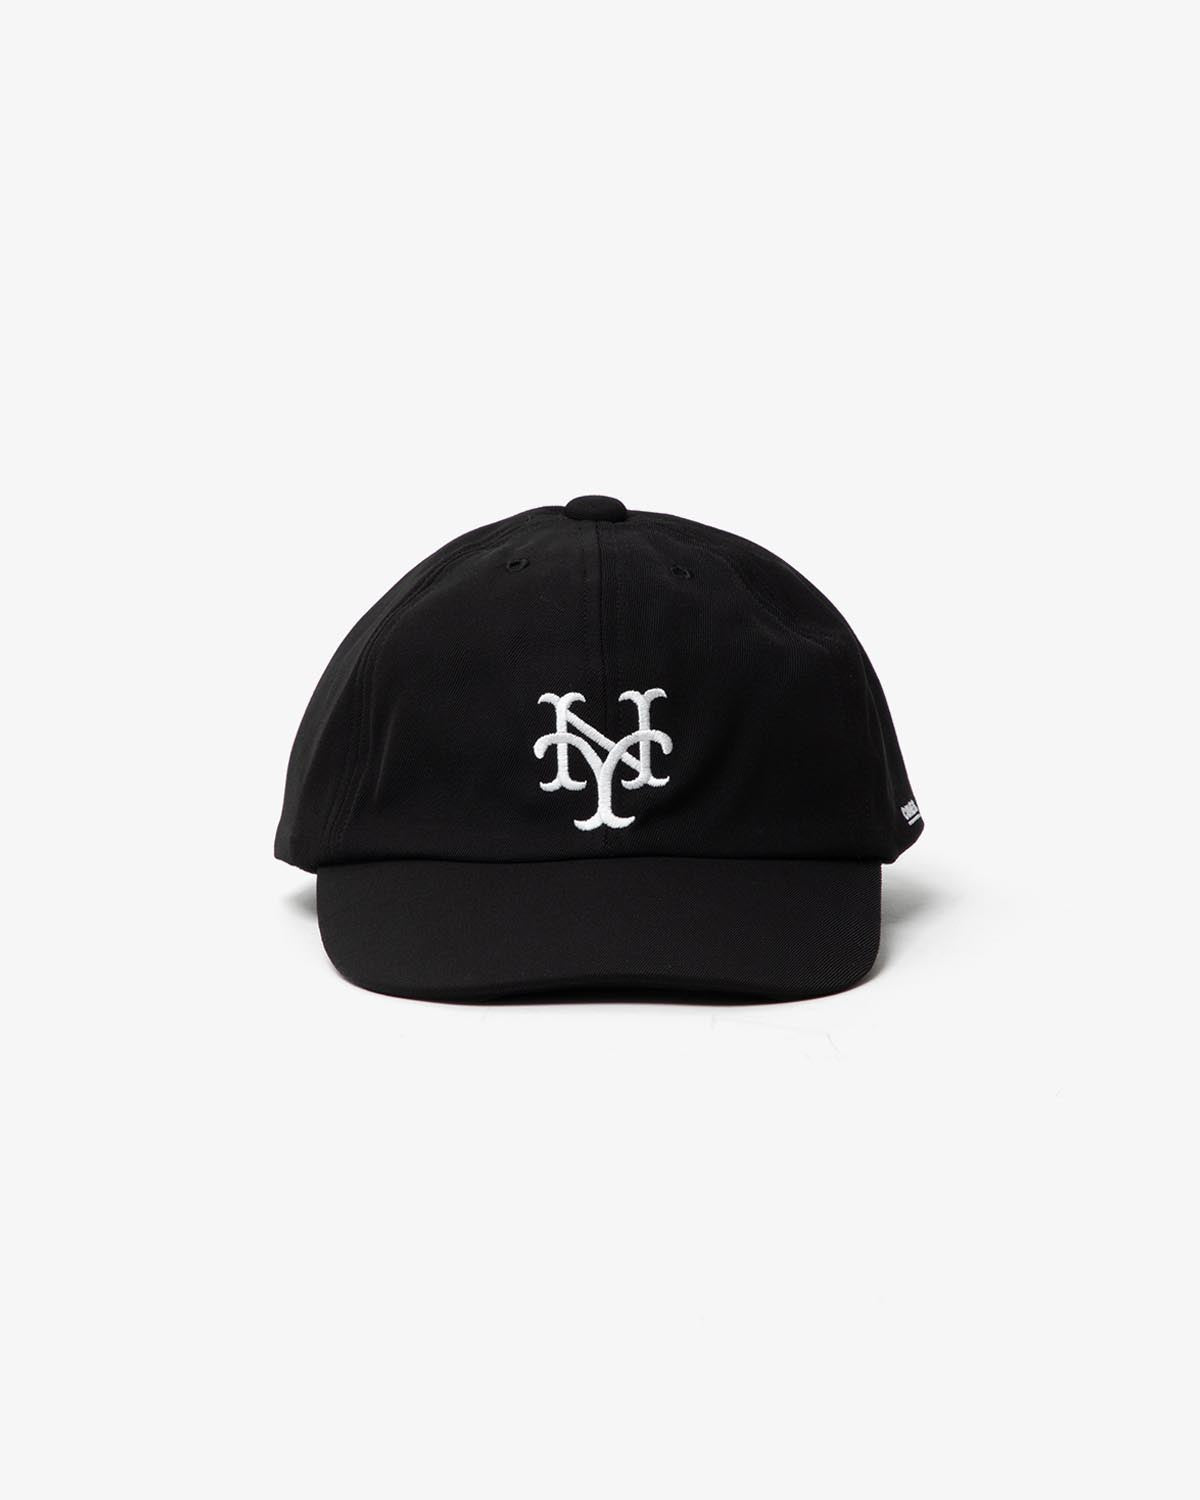 NY CUBANS CAP